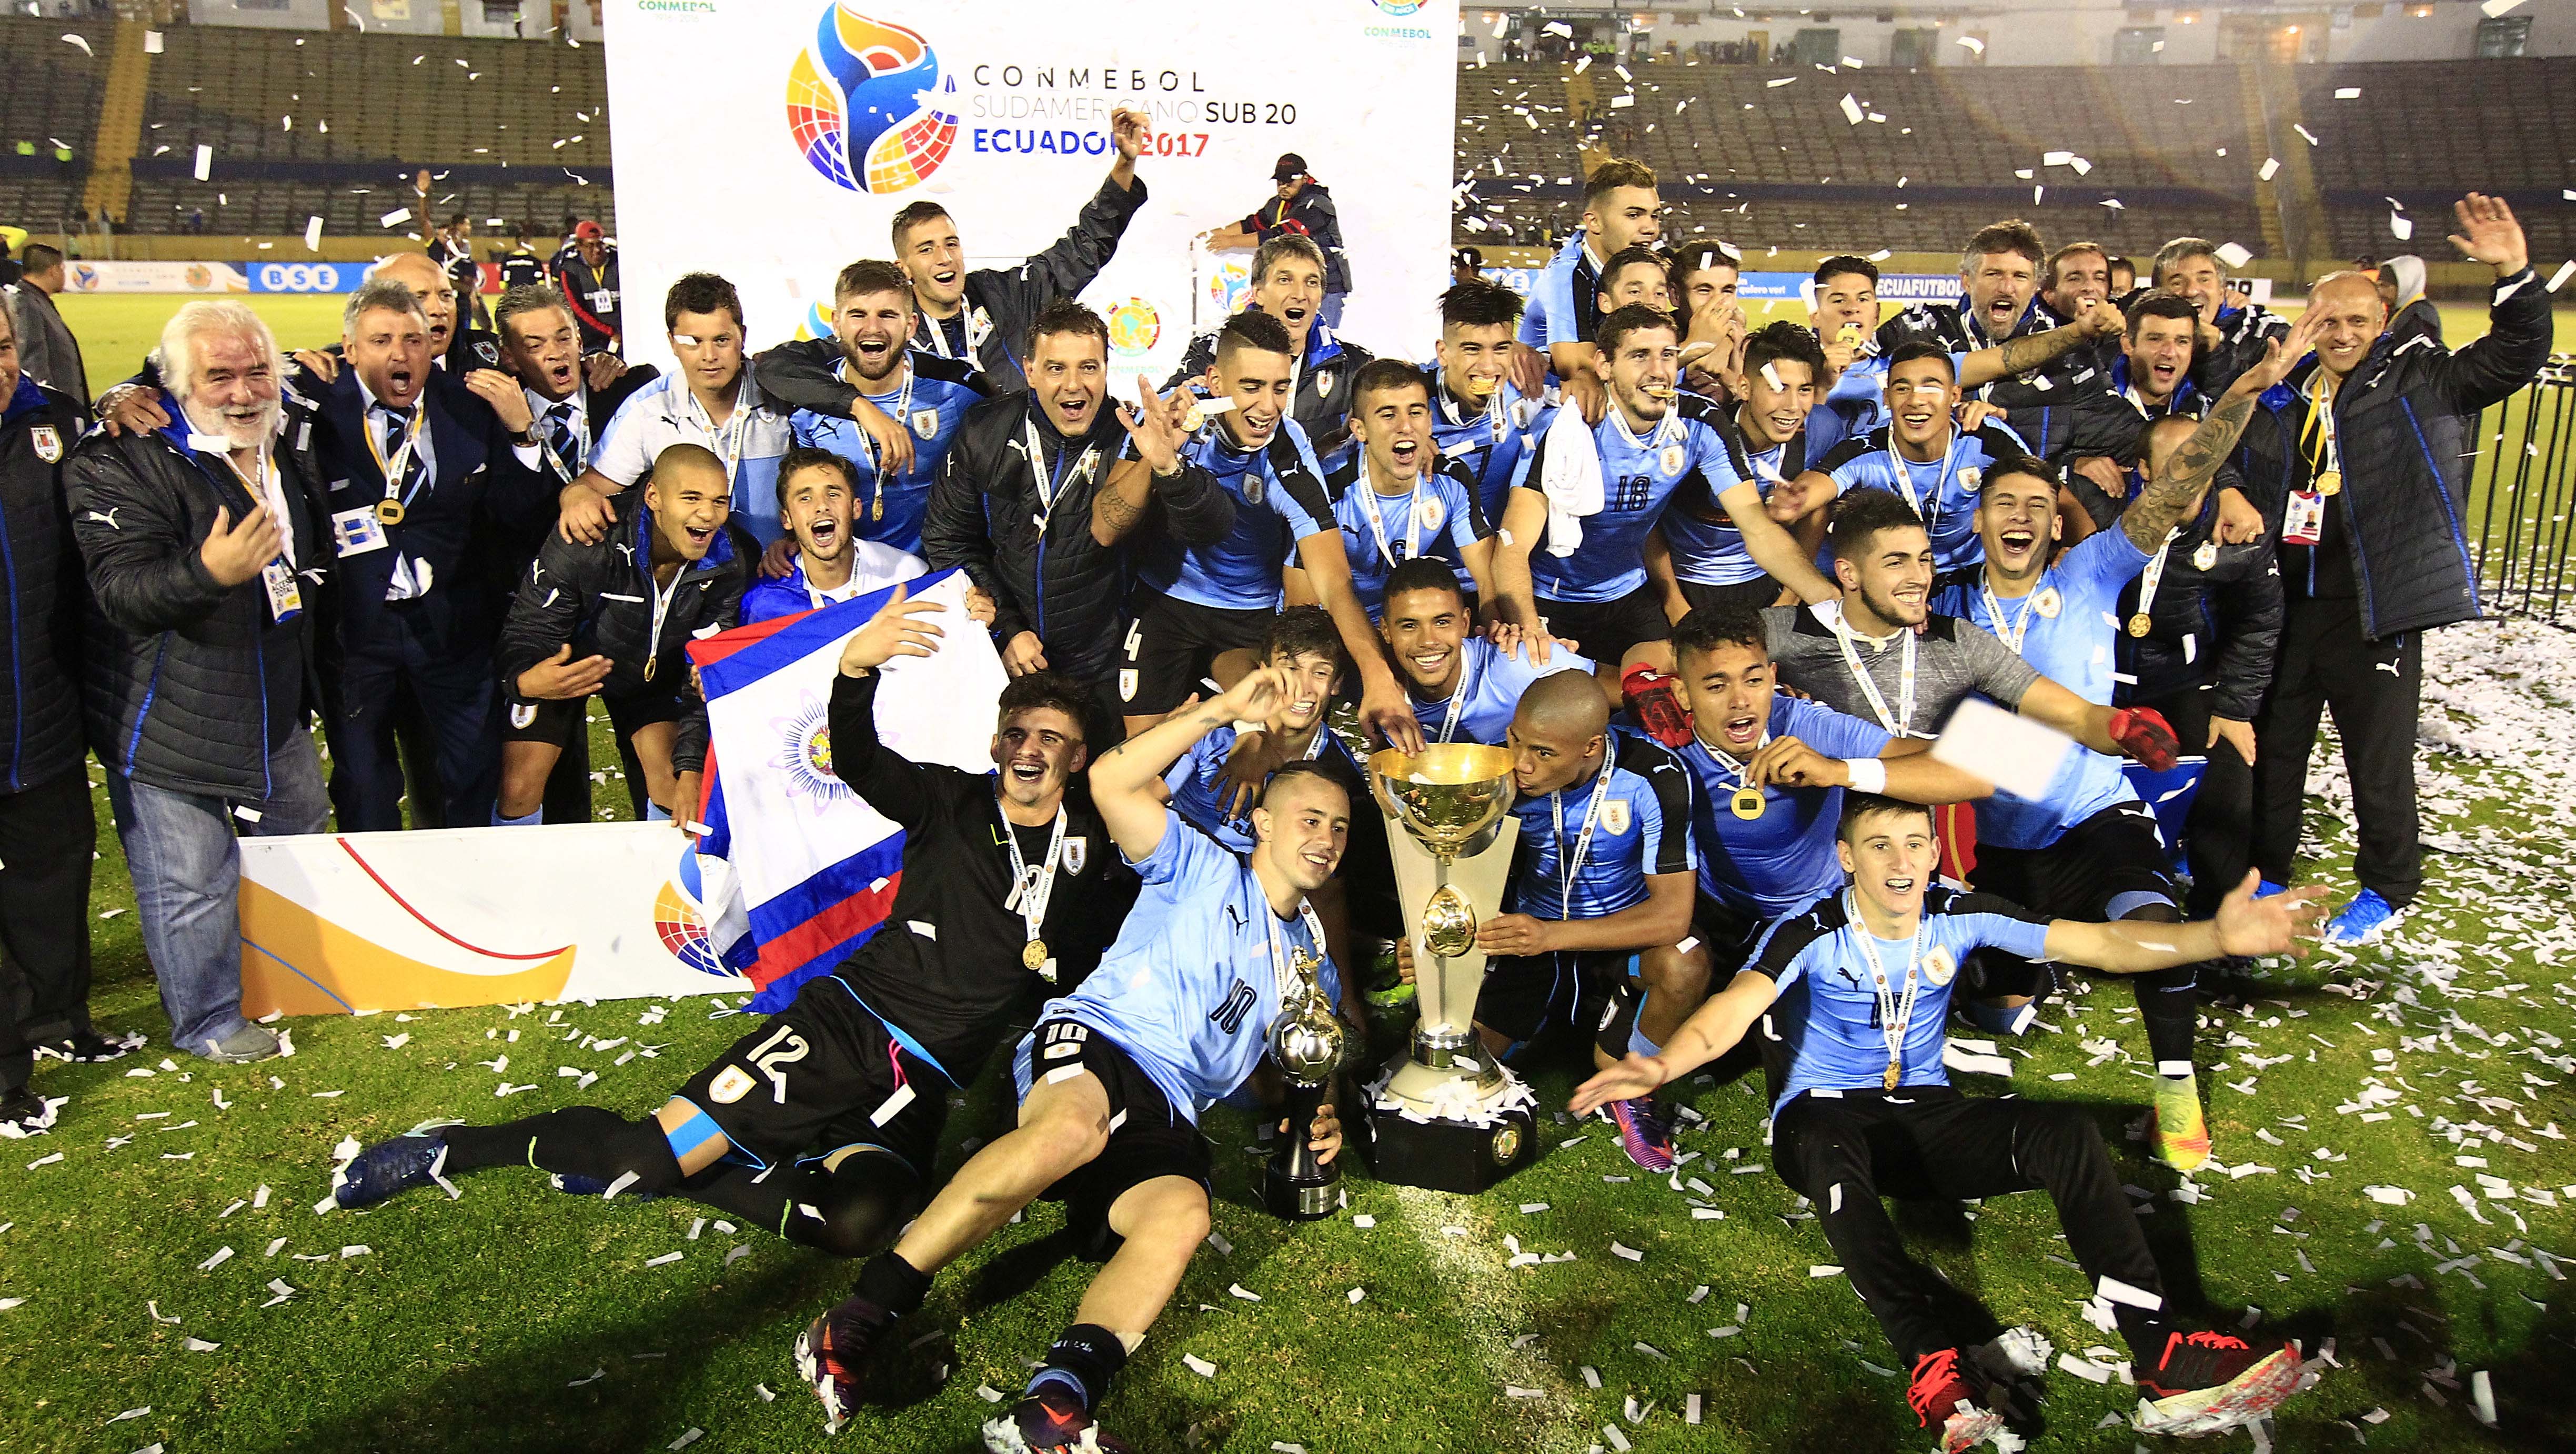 Luego de casi 40 años de espera, Uruguay obtuvo el campeonato sub-20.